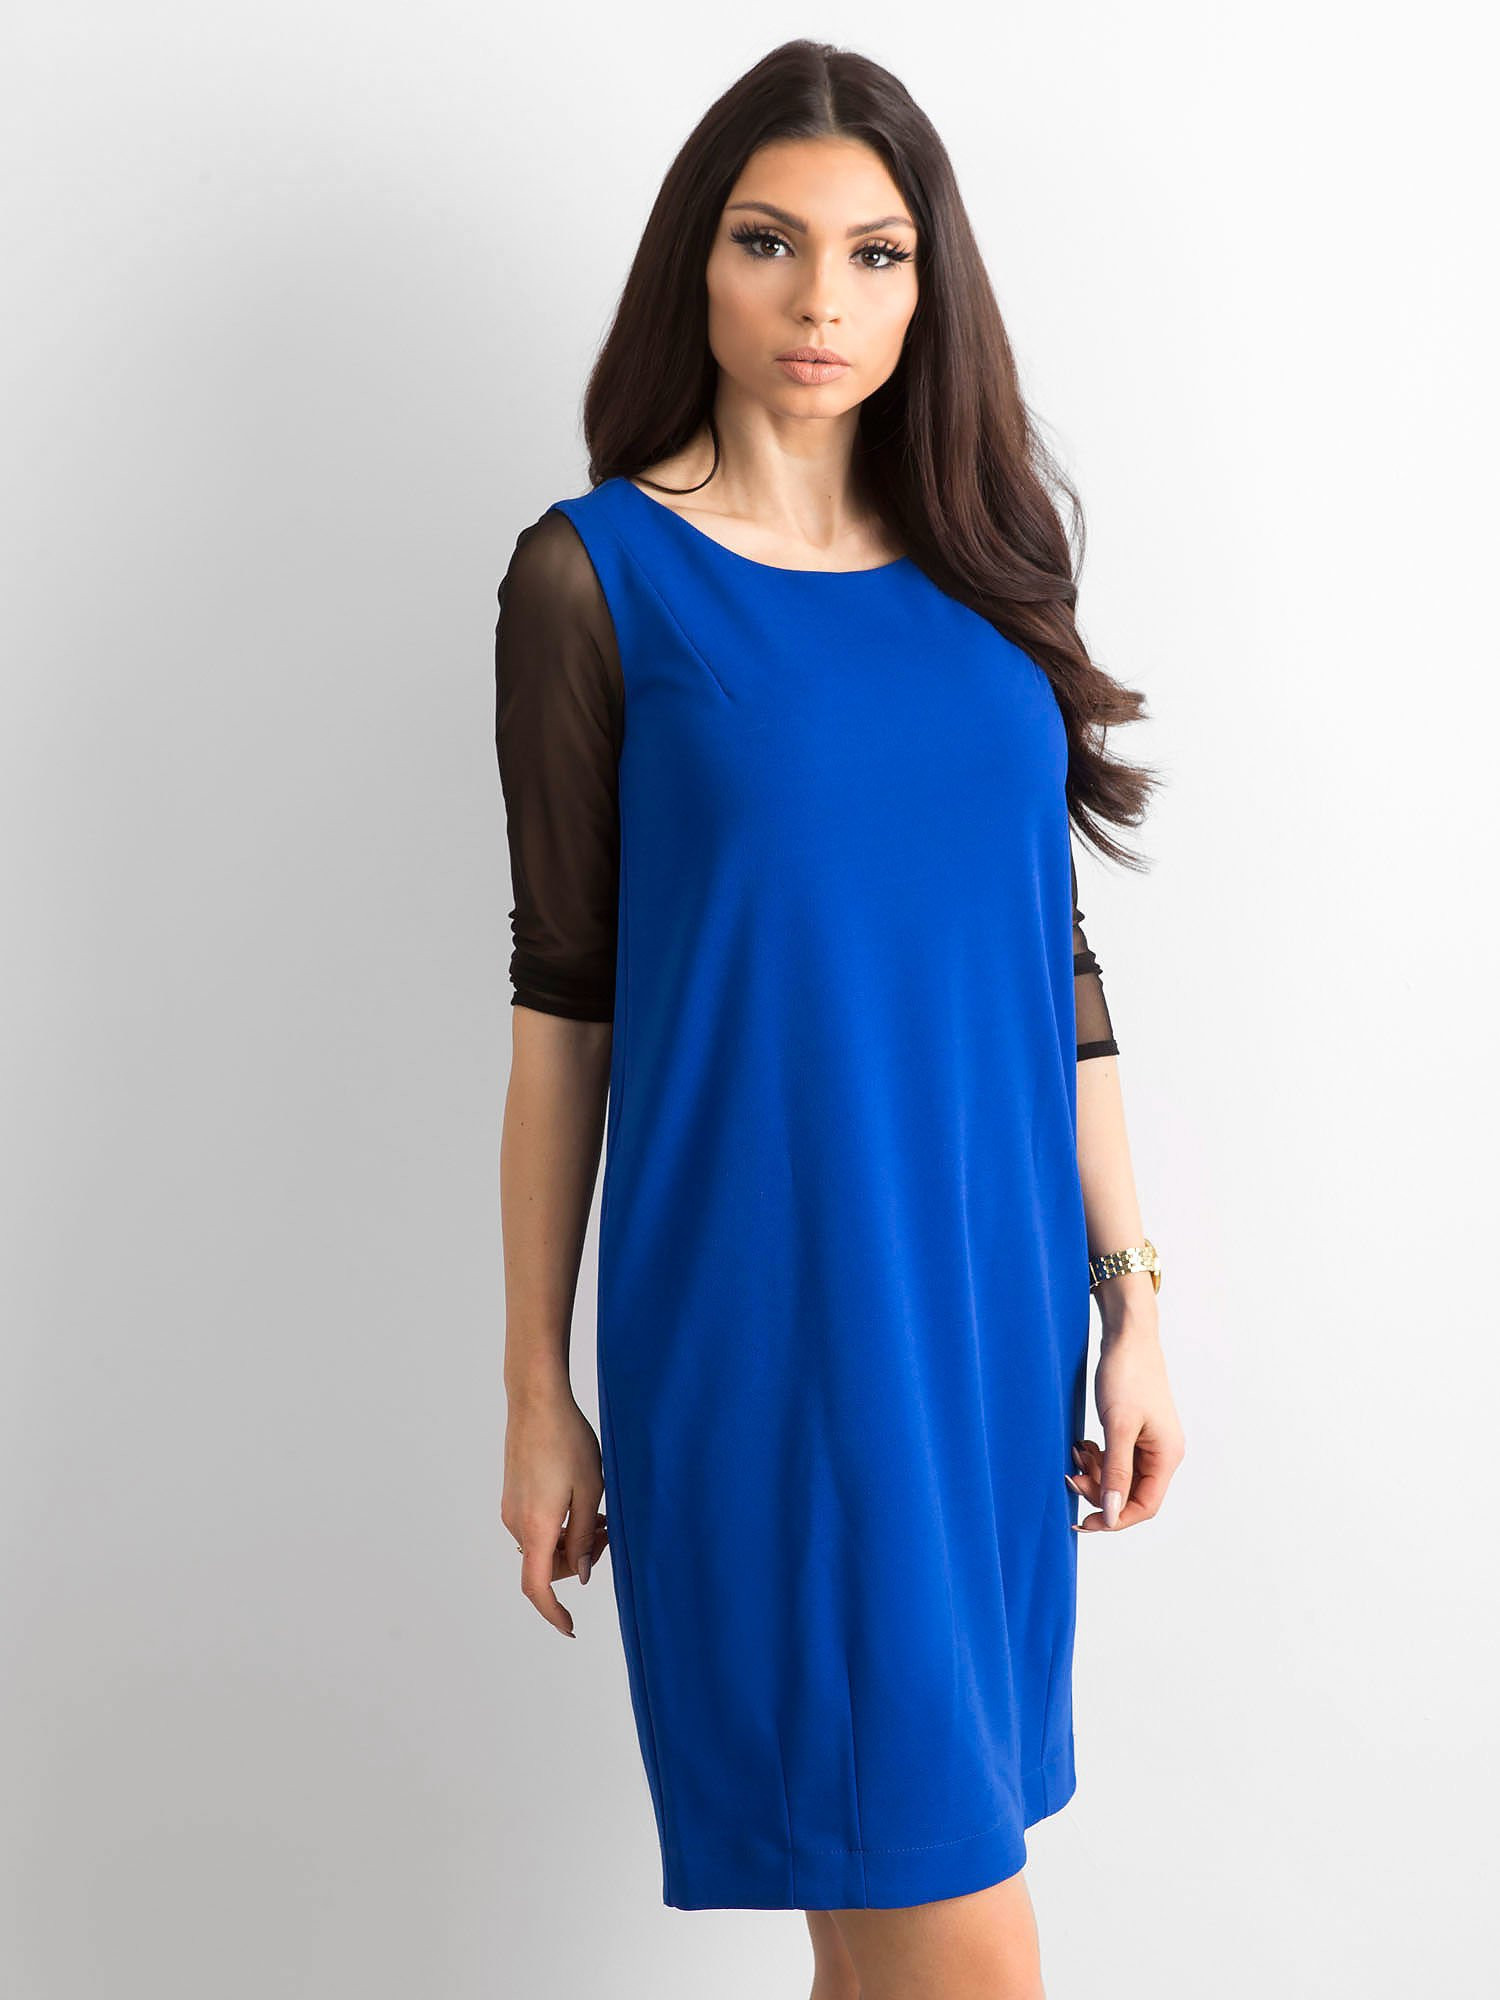 Dámské šaty SK-889 - FPrice Velikost: 36, Barvy: Královská modř